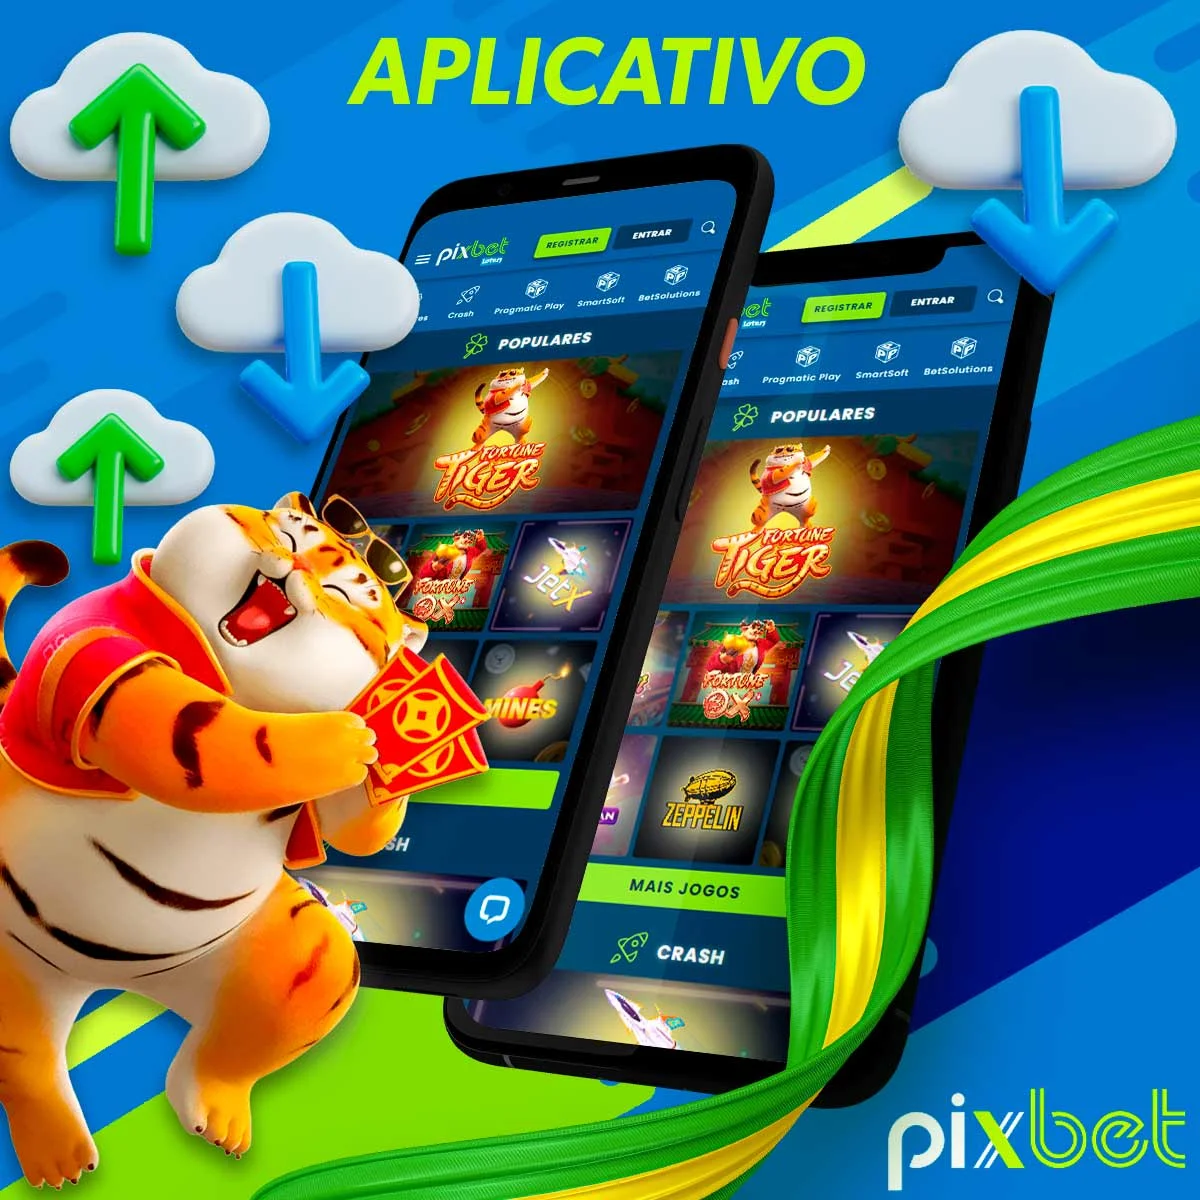 Instruções de instalação do aplicativo móvel PixBet para o jogo Fortune Tiger